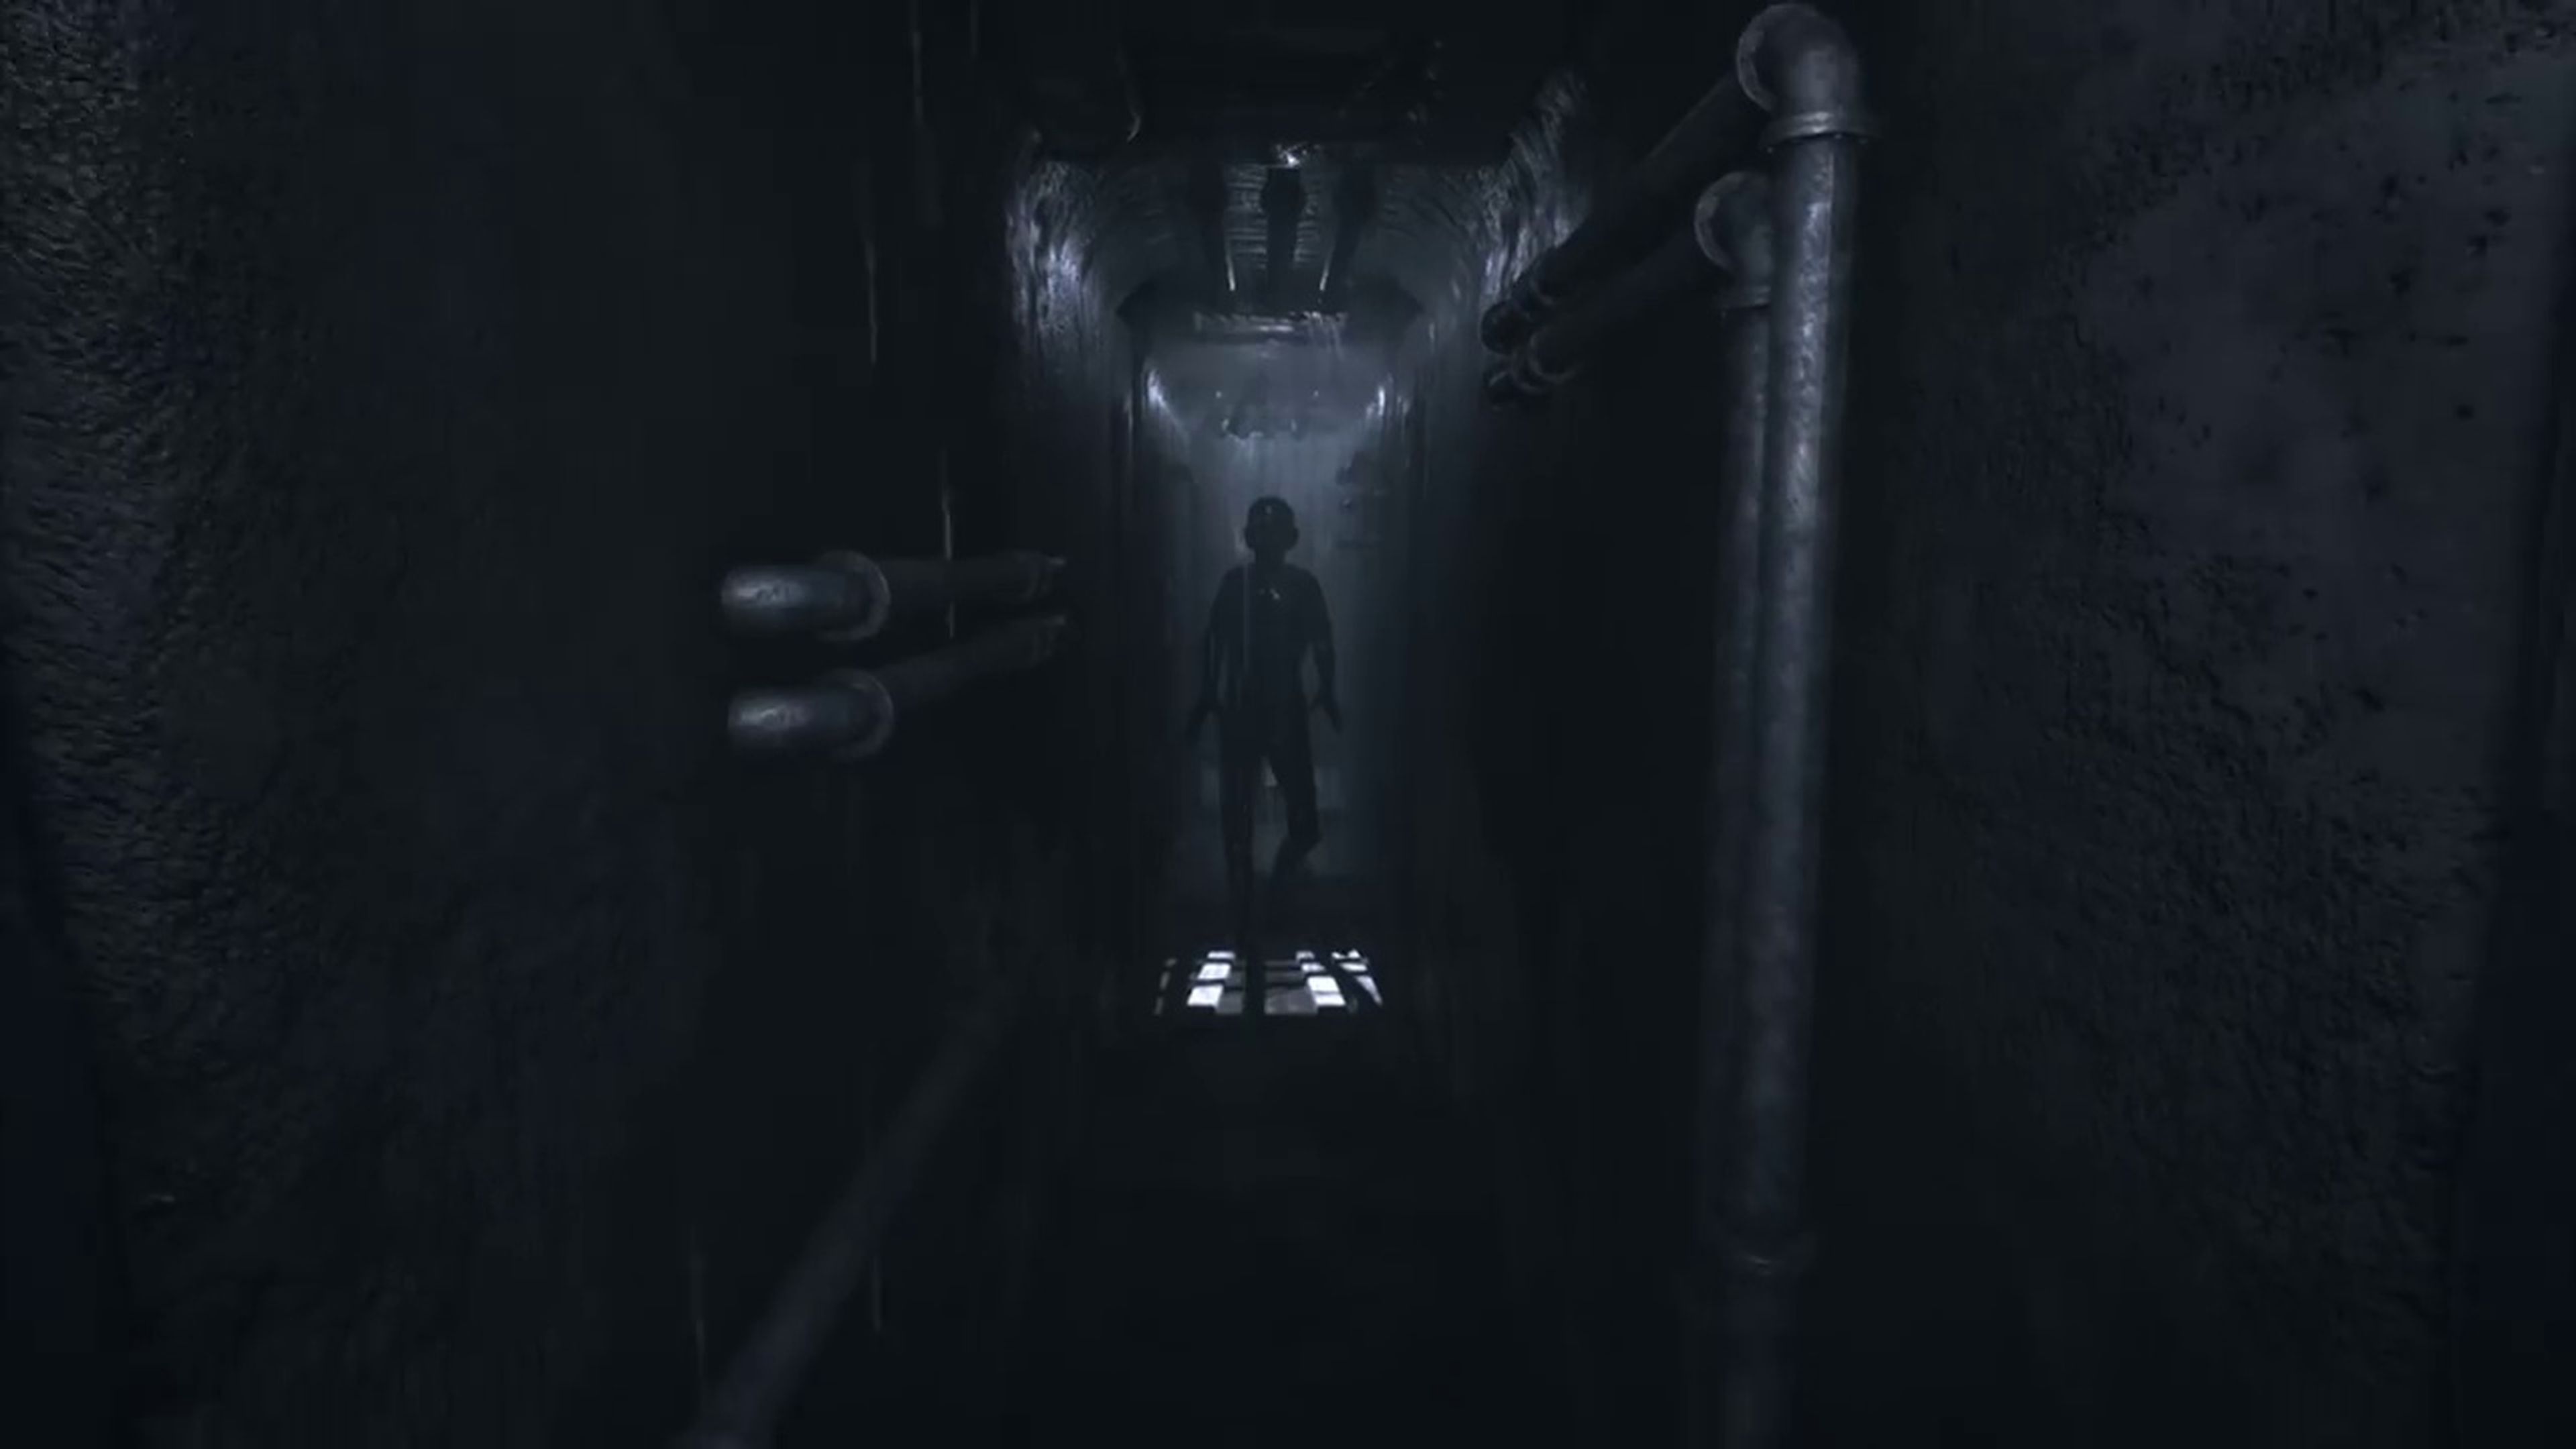 Visage - Gameplay del survival horror inspirado en PT